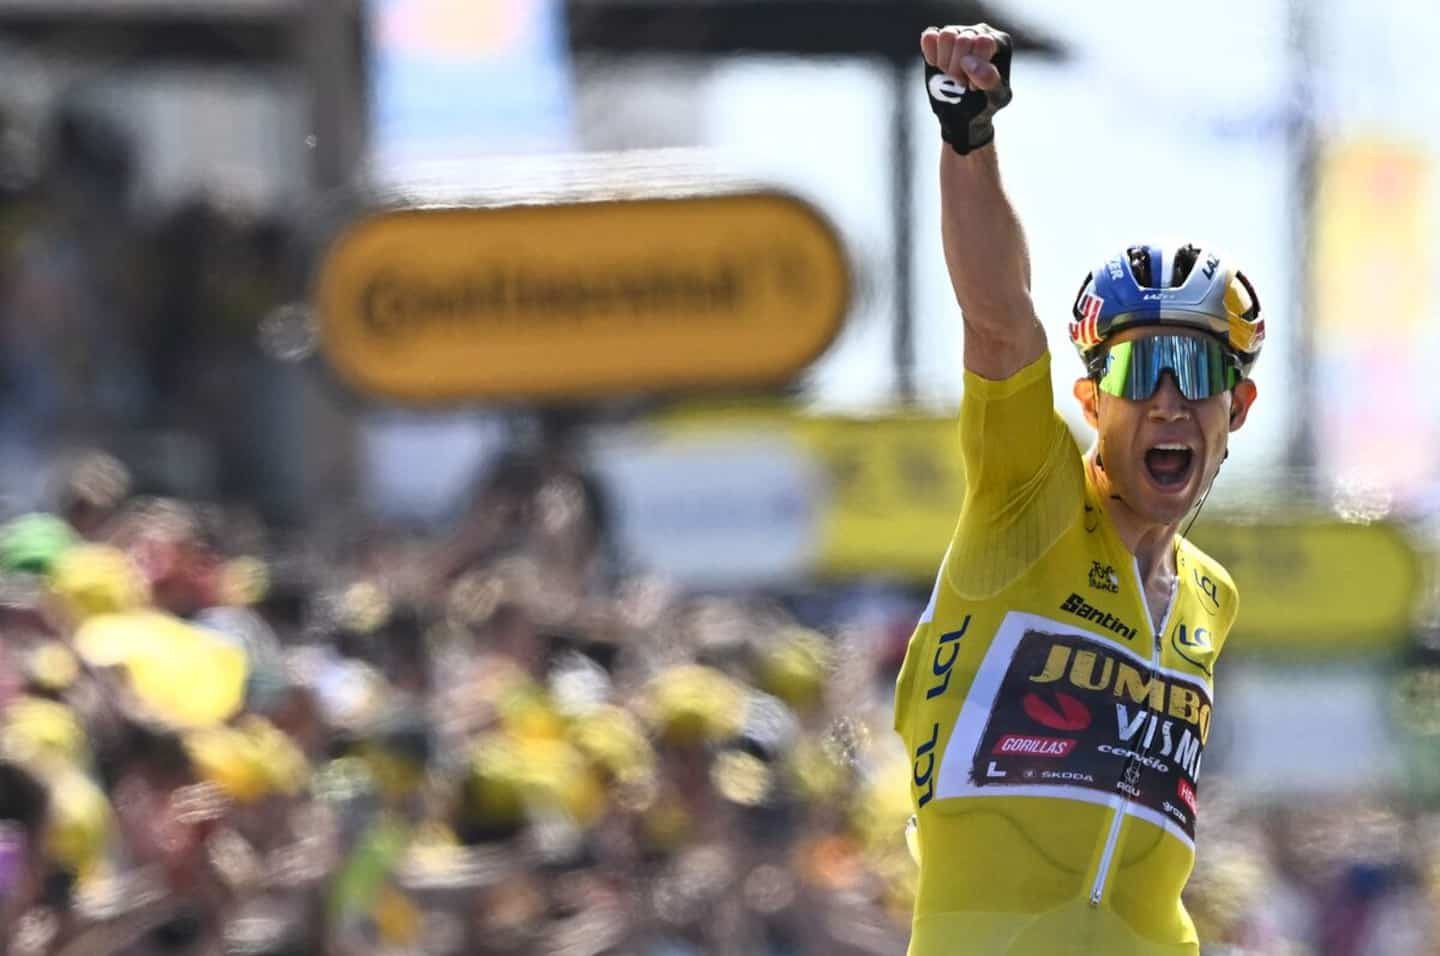 Tour de France: Wout van Aert intractable